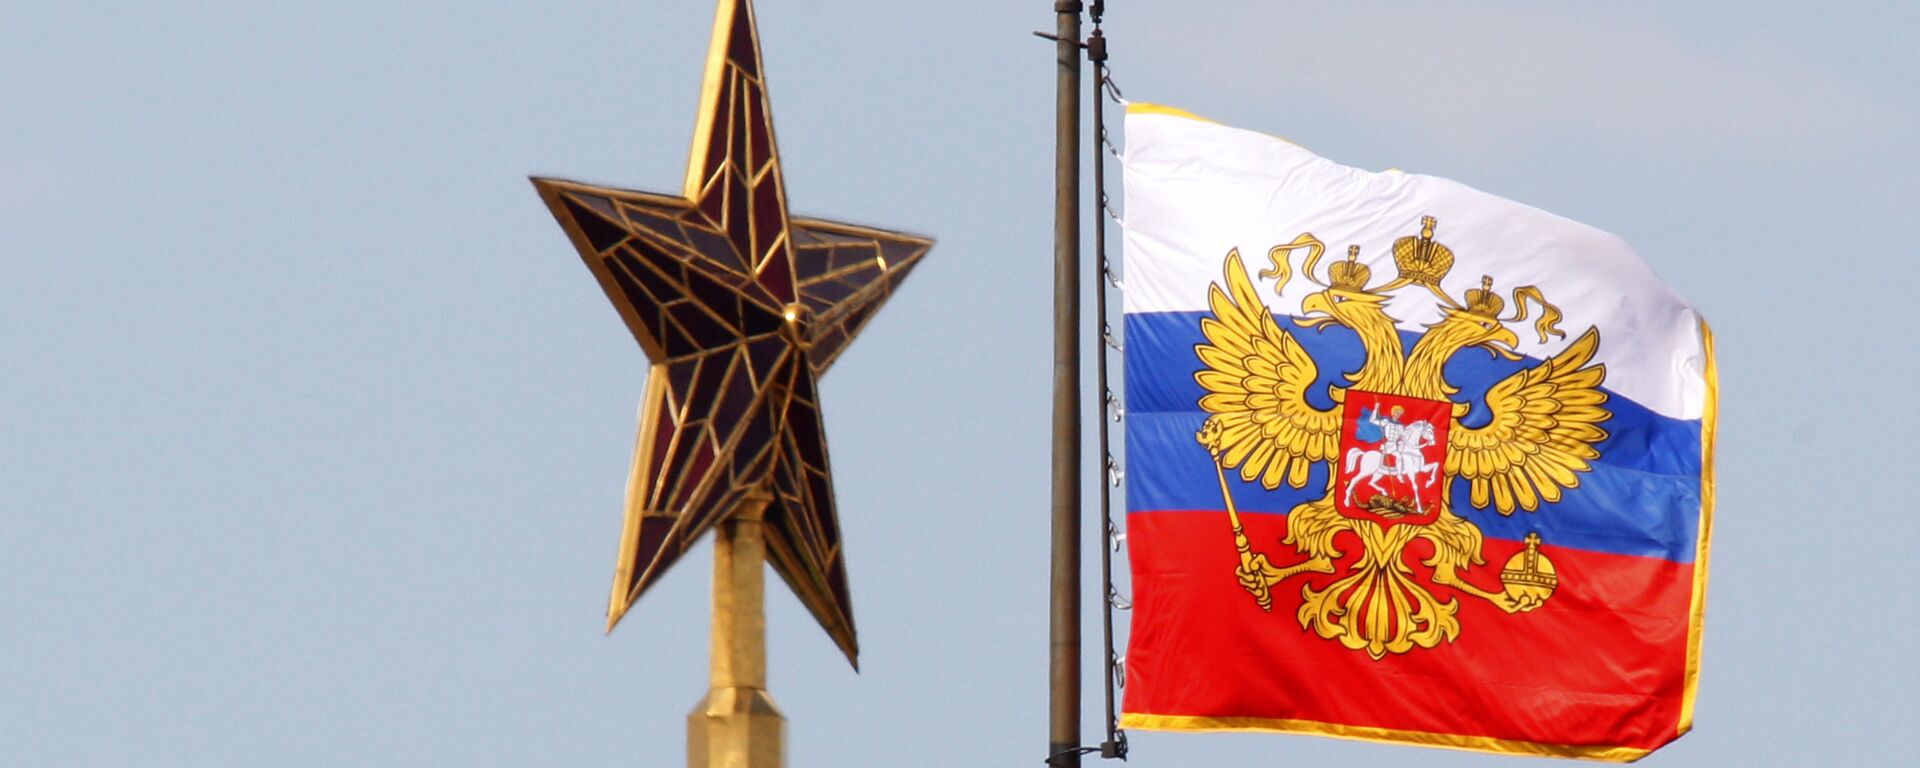 El estandarte (bandera) del presidente de la Federación de Rusia - Sputnik Mundo, 1920, 30.03.2021